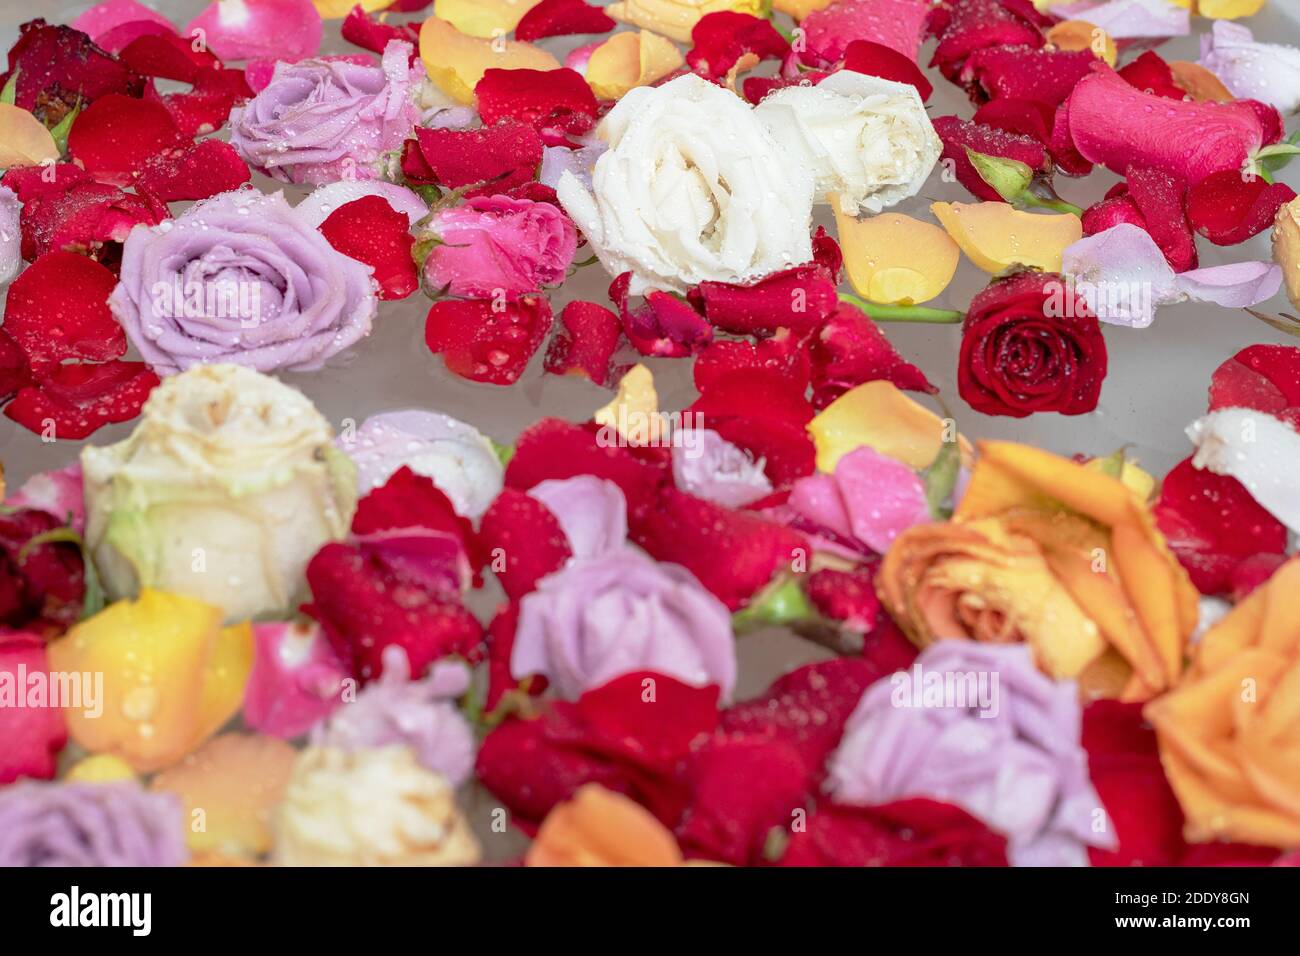 Vasca idromassaggio Thai spaThai con fiori foglie di testa di rosa e acqua. Concetto di trattamento di bellezza nella vasca da bagno del salone termale con foglie di rosa e loto all'interno. C Foto Stock